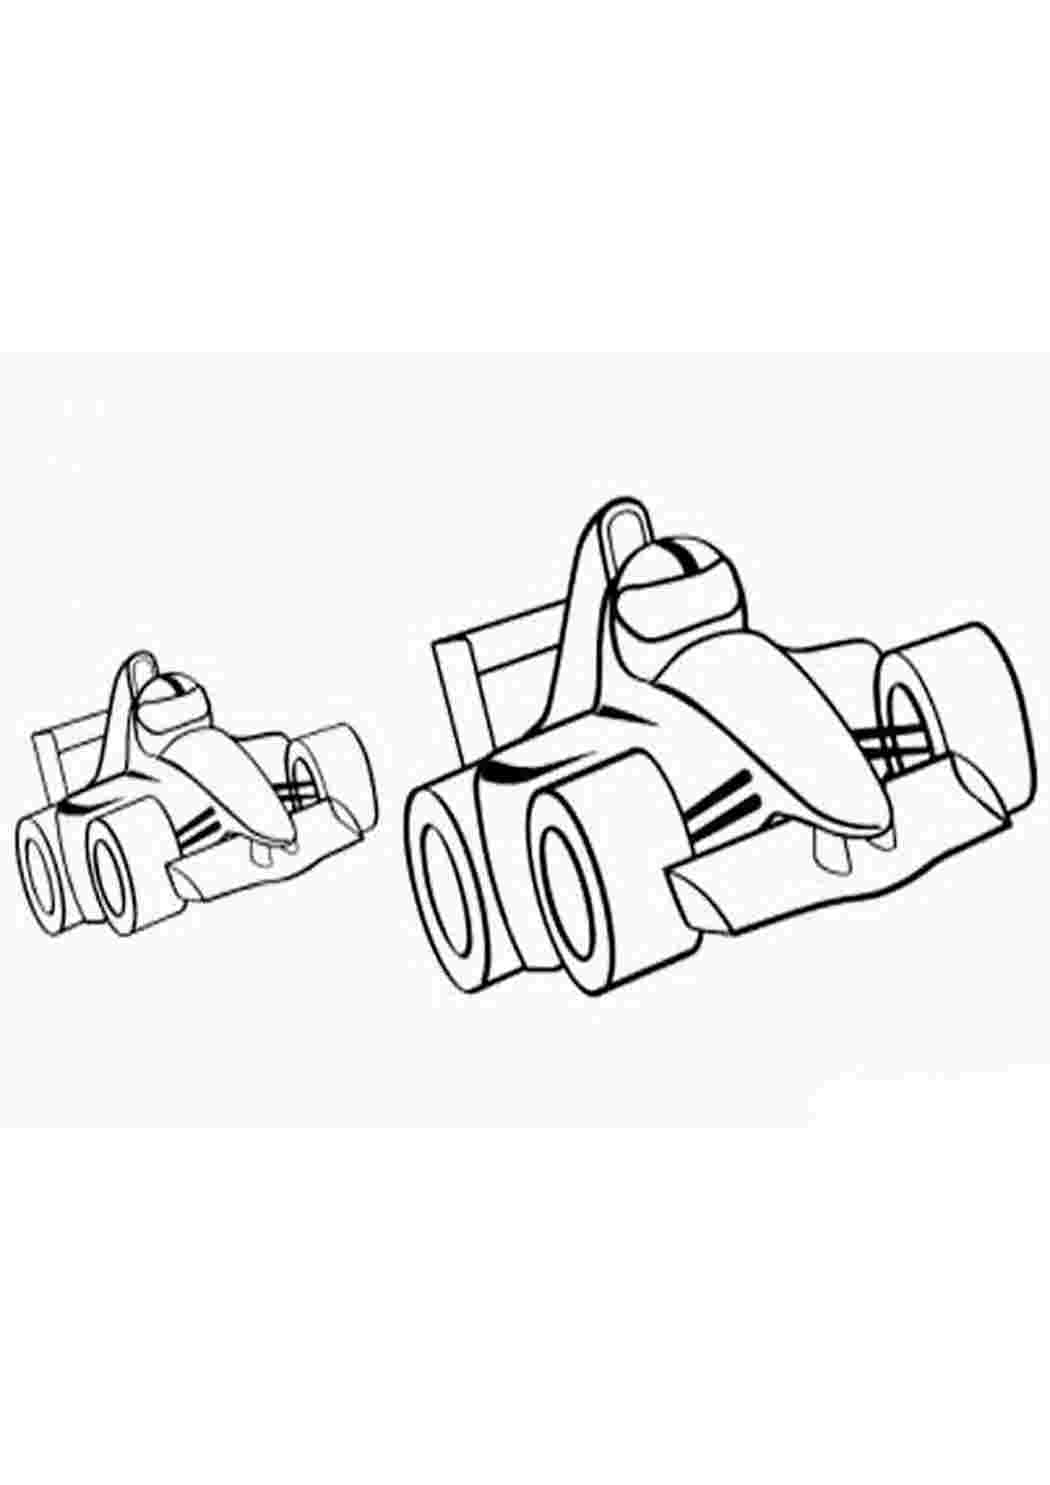 Возможные варианты раскраски болида Sauber 2018-го года